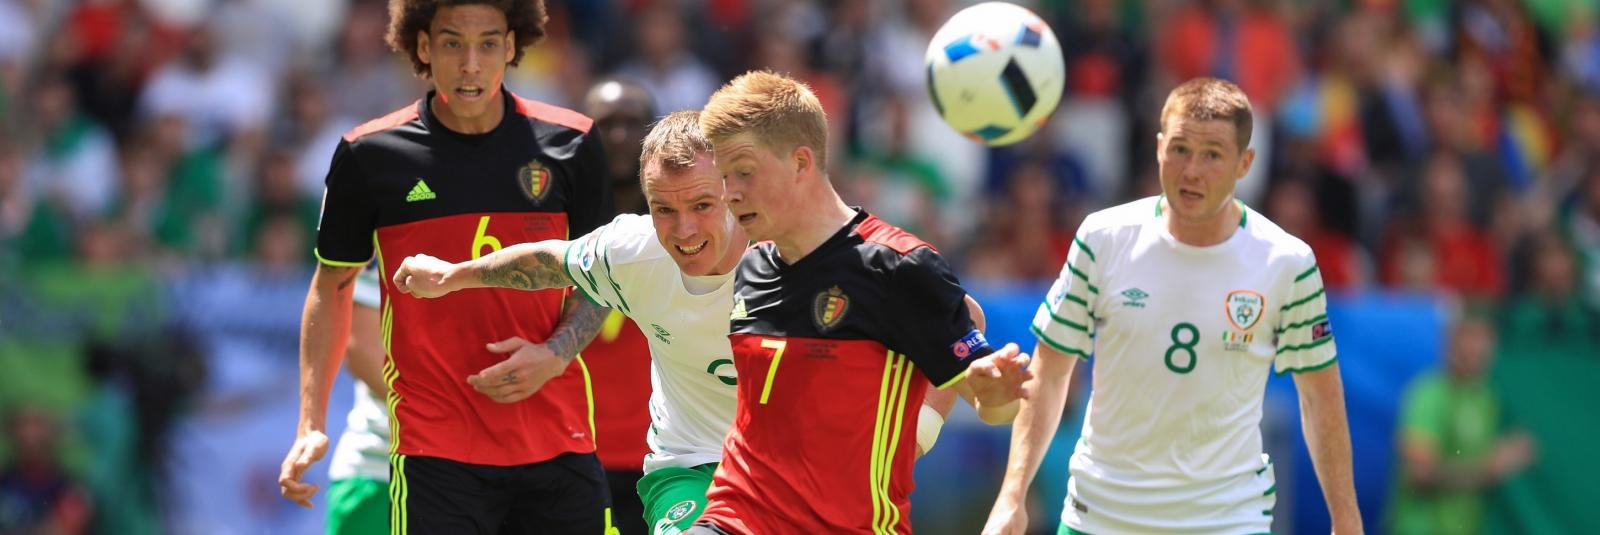 Belgium 3-0 Republic of Ireland: EURO 2016 Group E Report